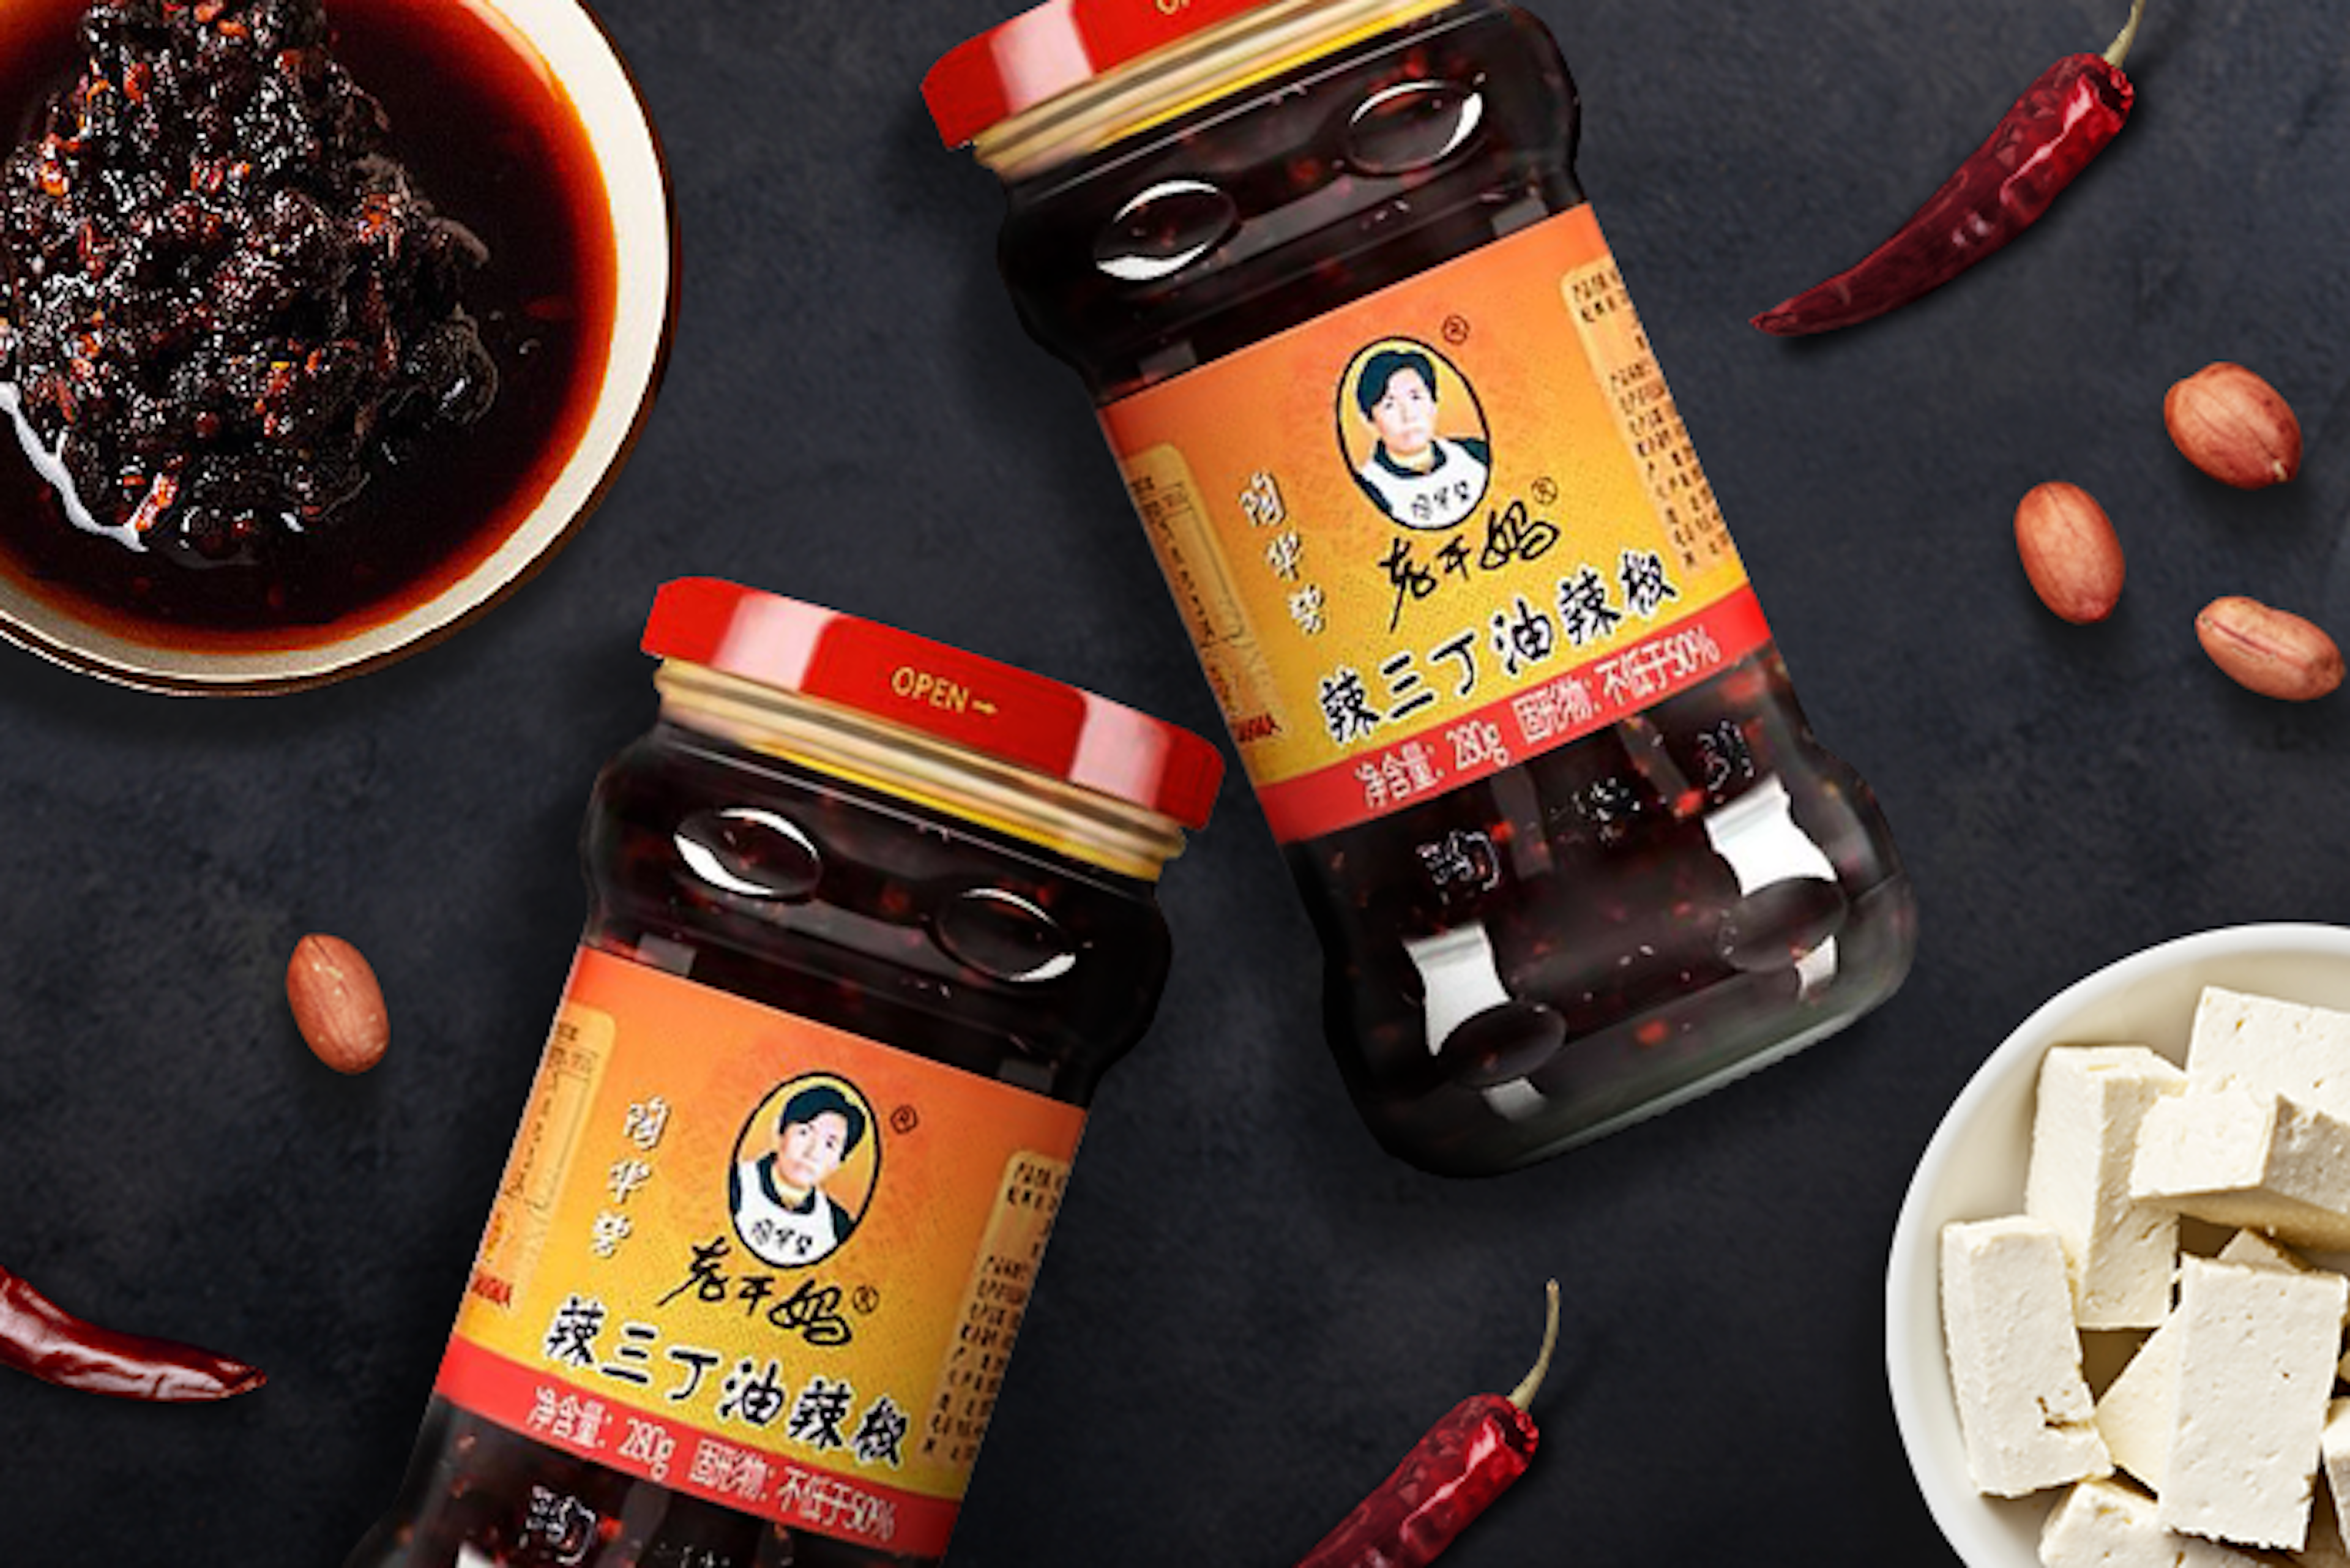 Vorderansicht der LAOGANMA Kohlrabi, Erdnüsse & Tofu Chili Öl 280g Packung: Zeigt die attraktive Verpackung mit dem Logo und der Sauce im Glas